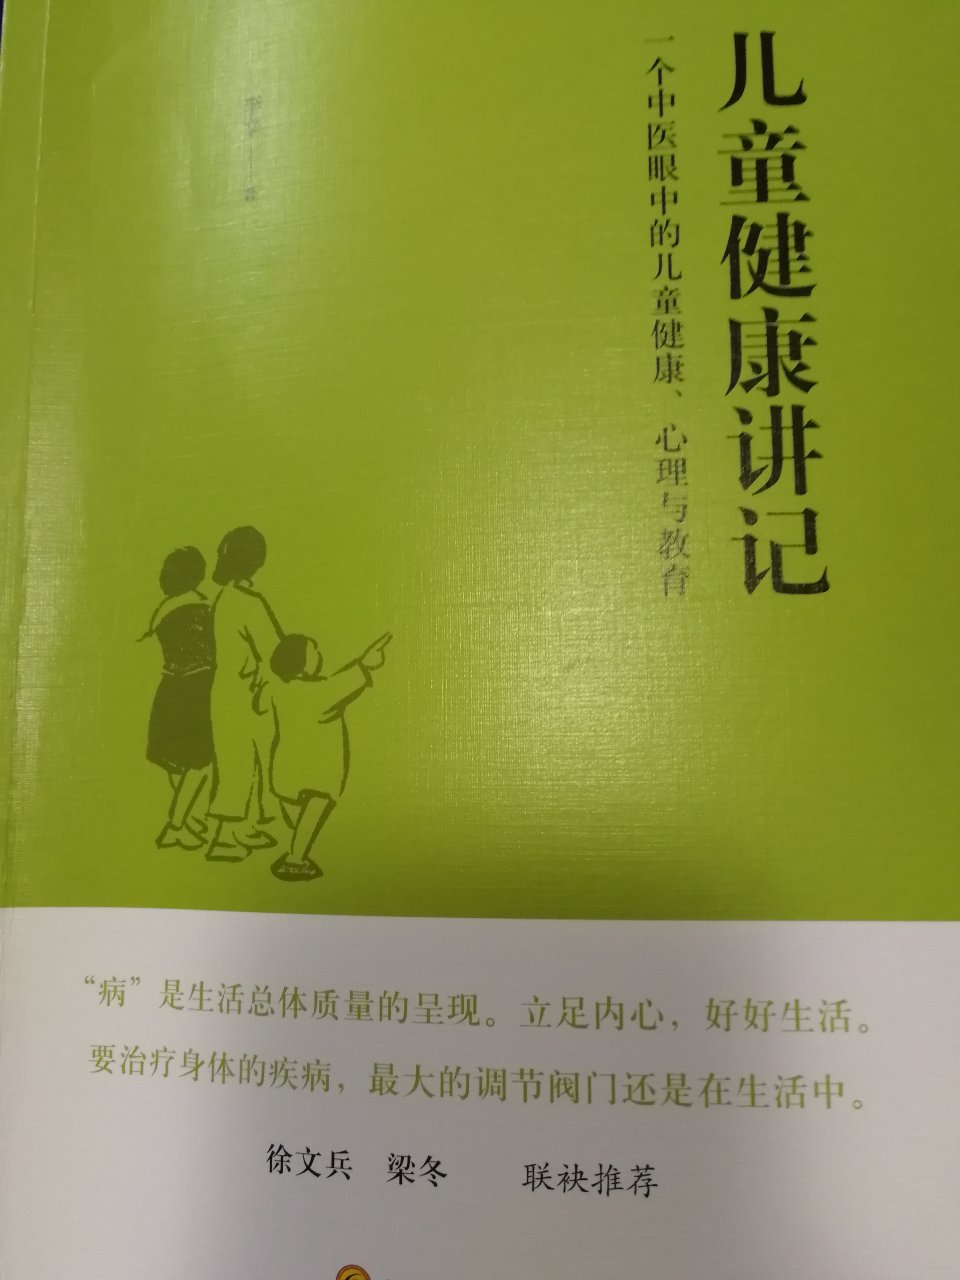 徐文兵梁东老师推荐，值得一读，为了孩子，父母要让知识武装起来。